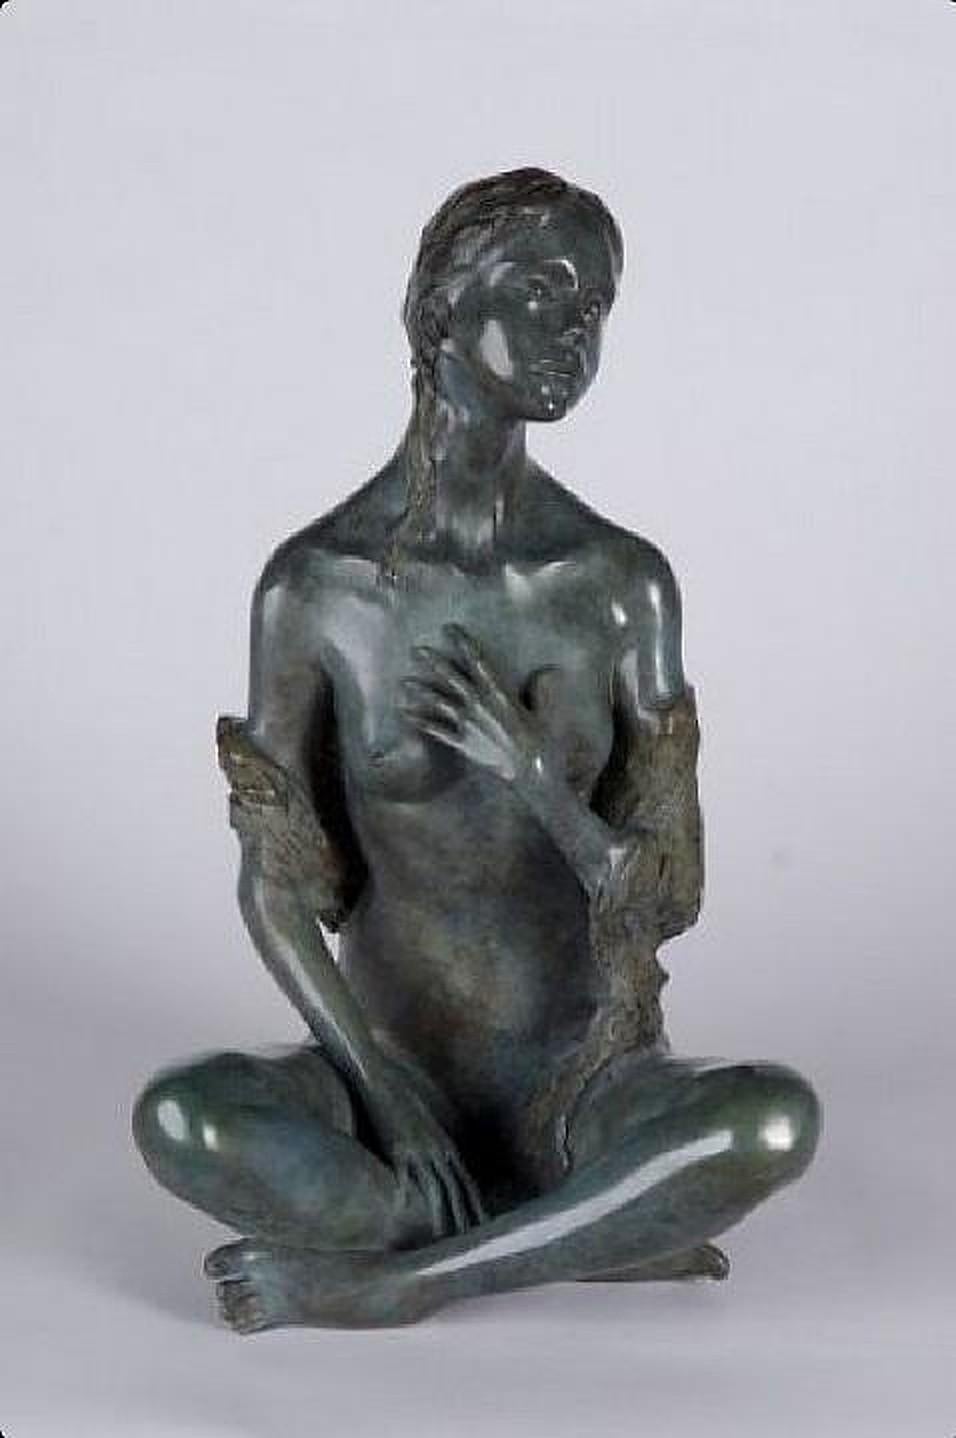 Beatrice BISSARA Figurative Sculpture – Innere Schönheit